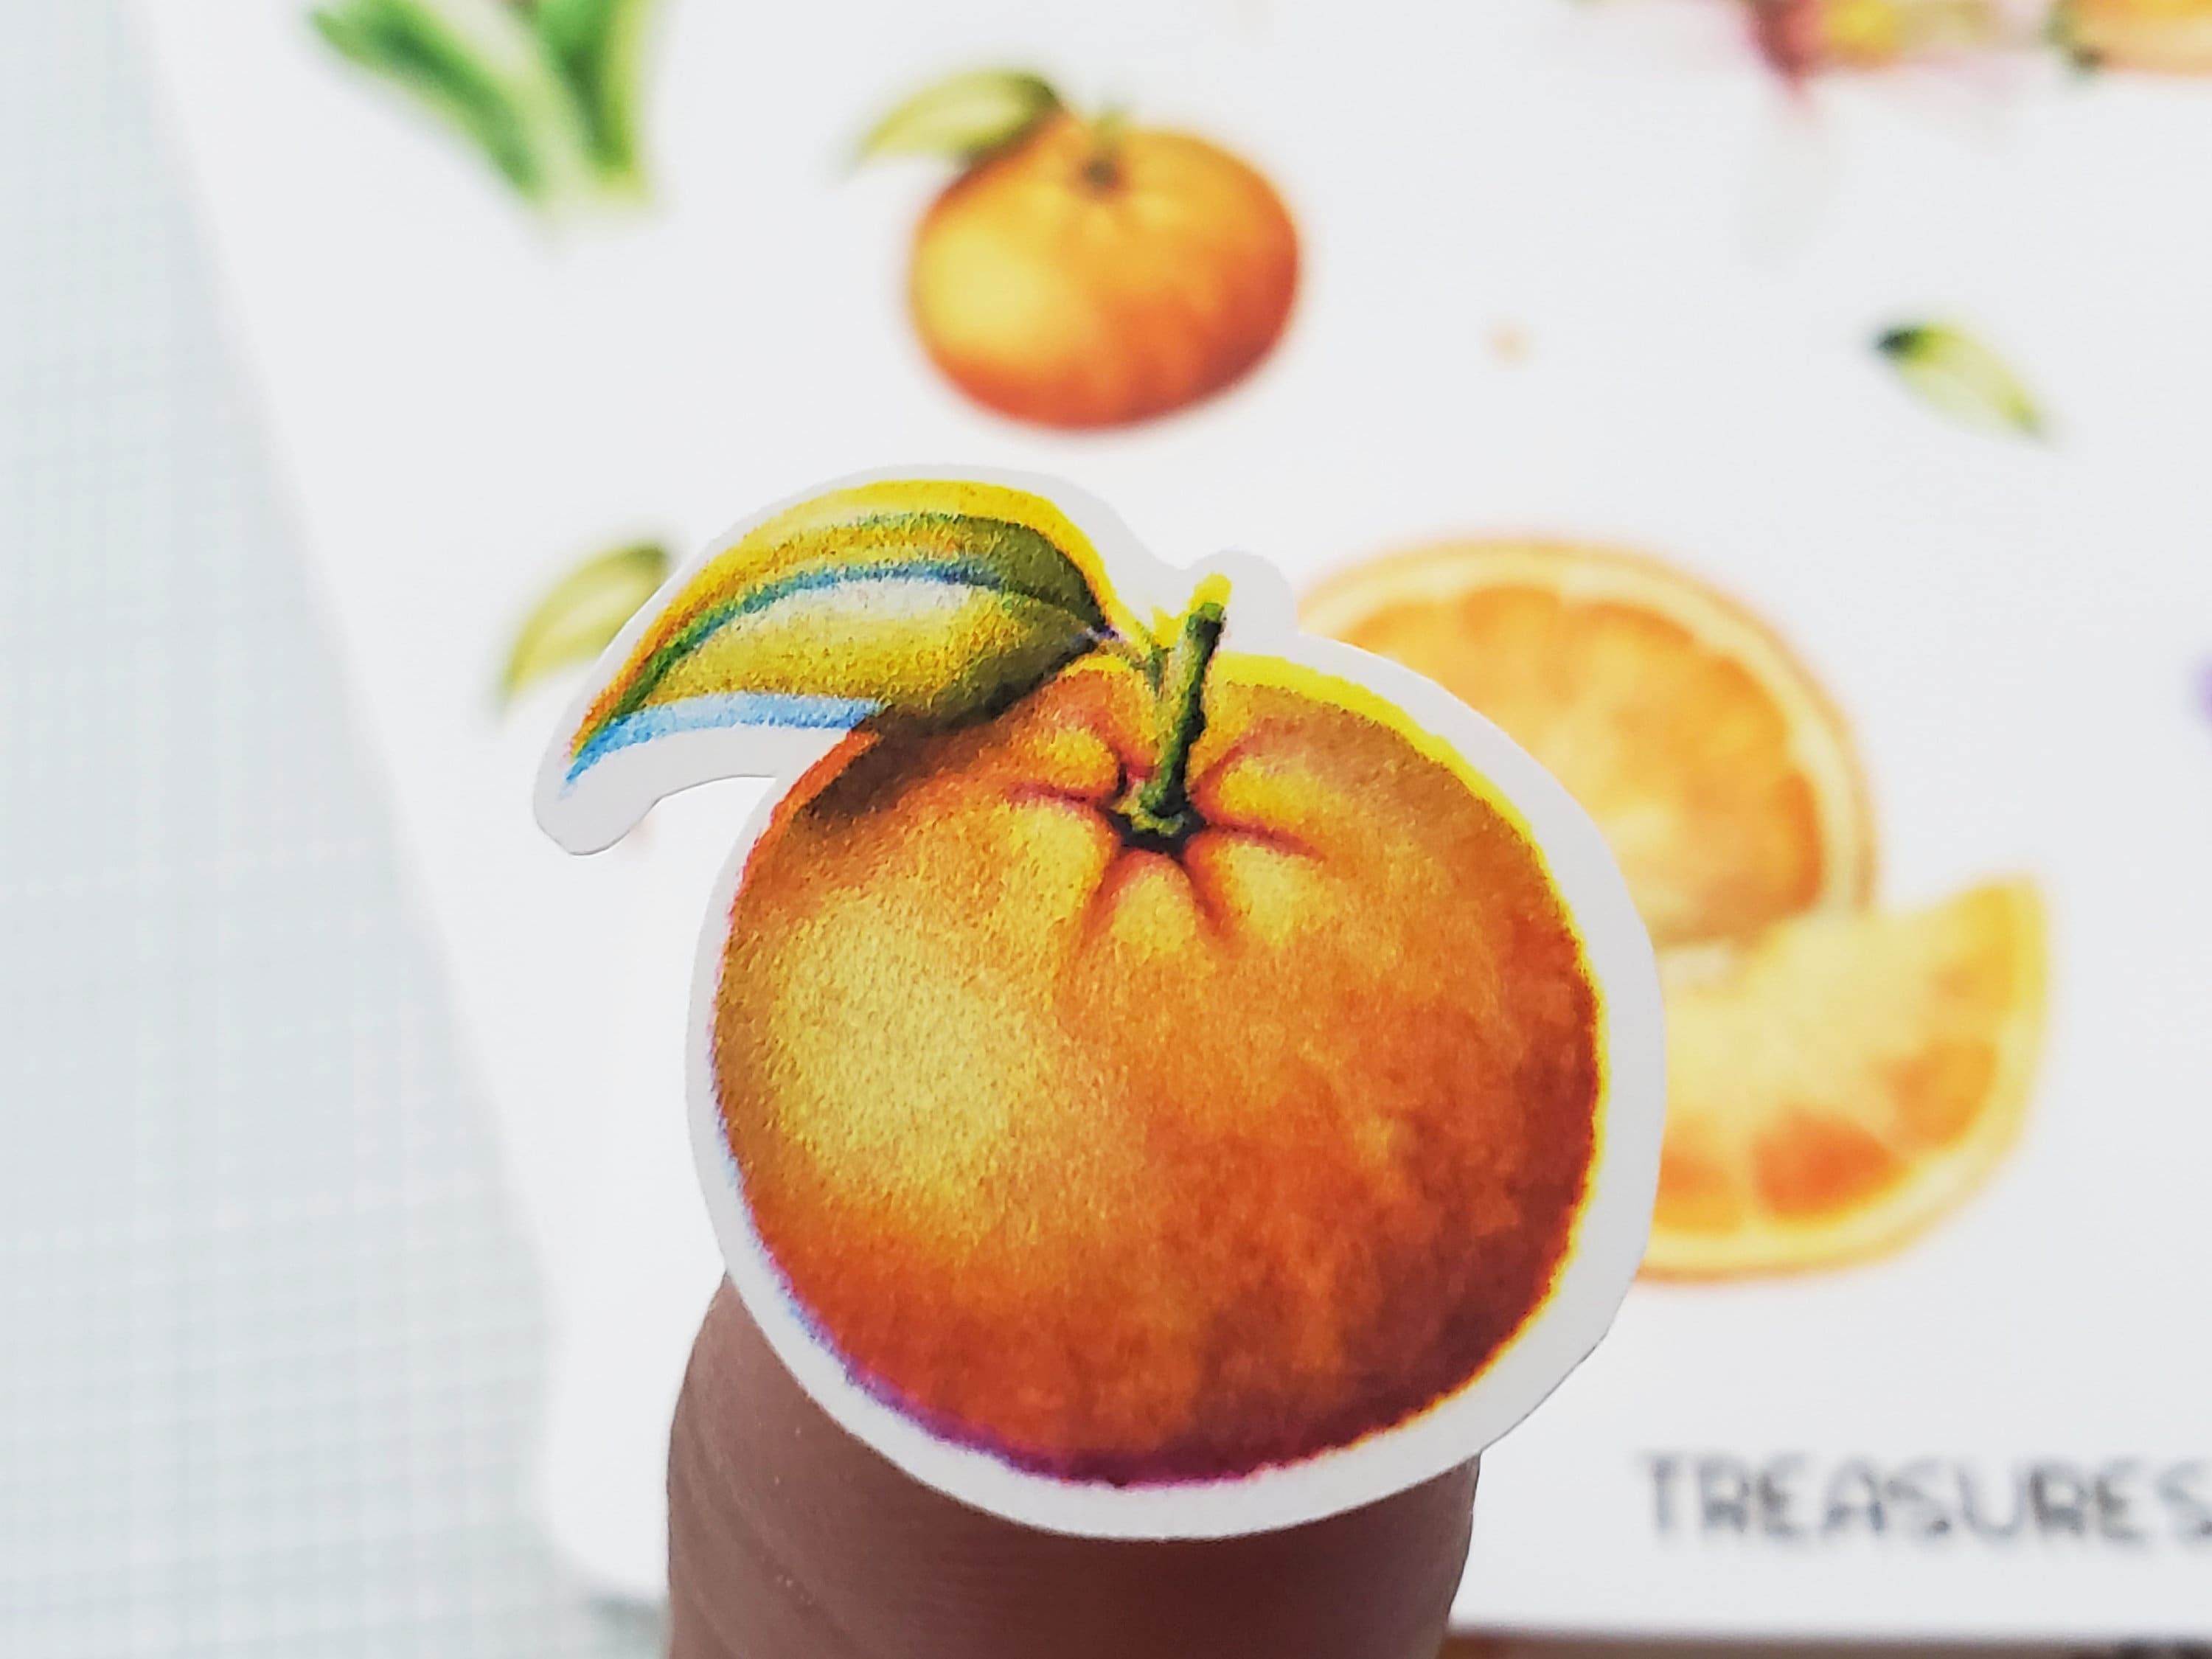 Oranges Sticker Sheet Orange Stickers Citrus Fruit Sticker | Etsy